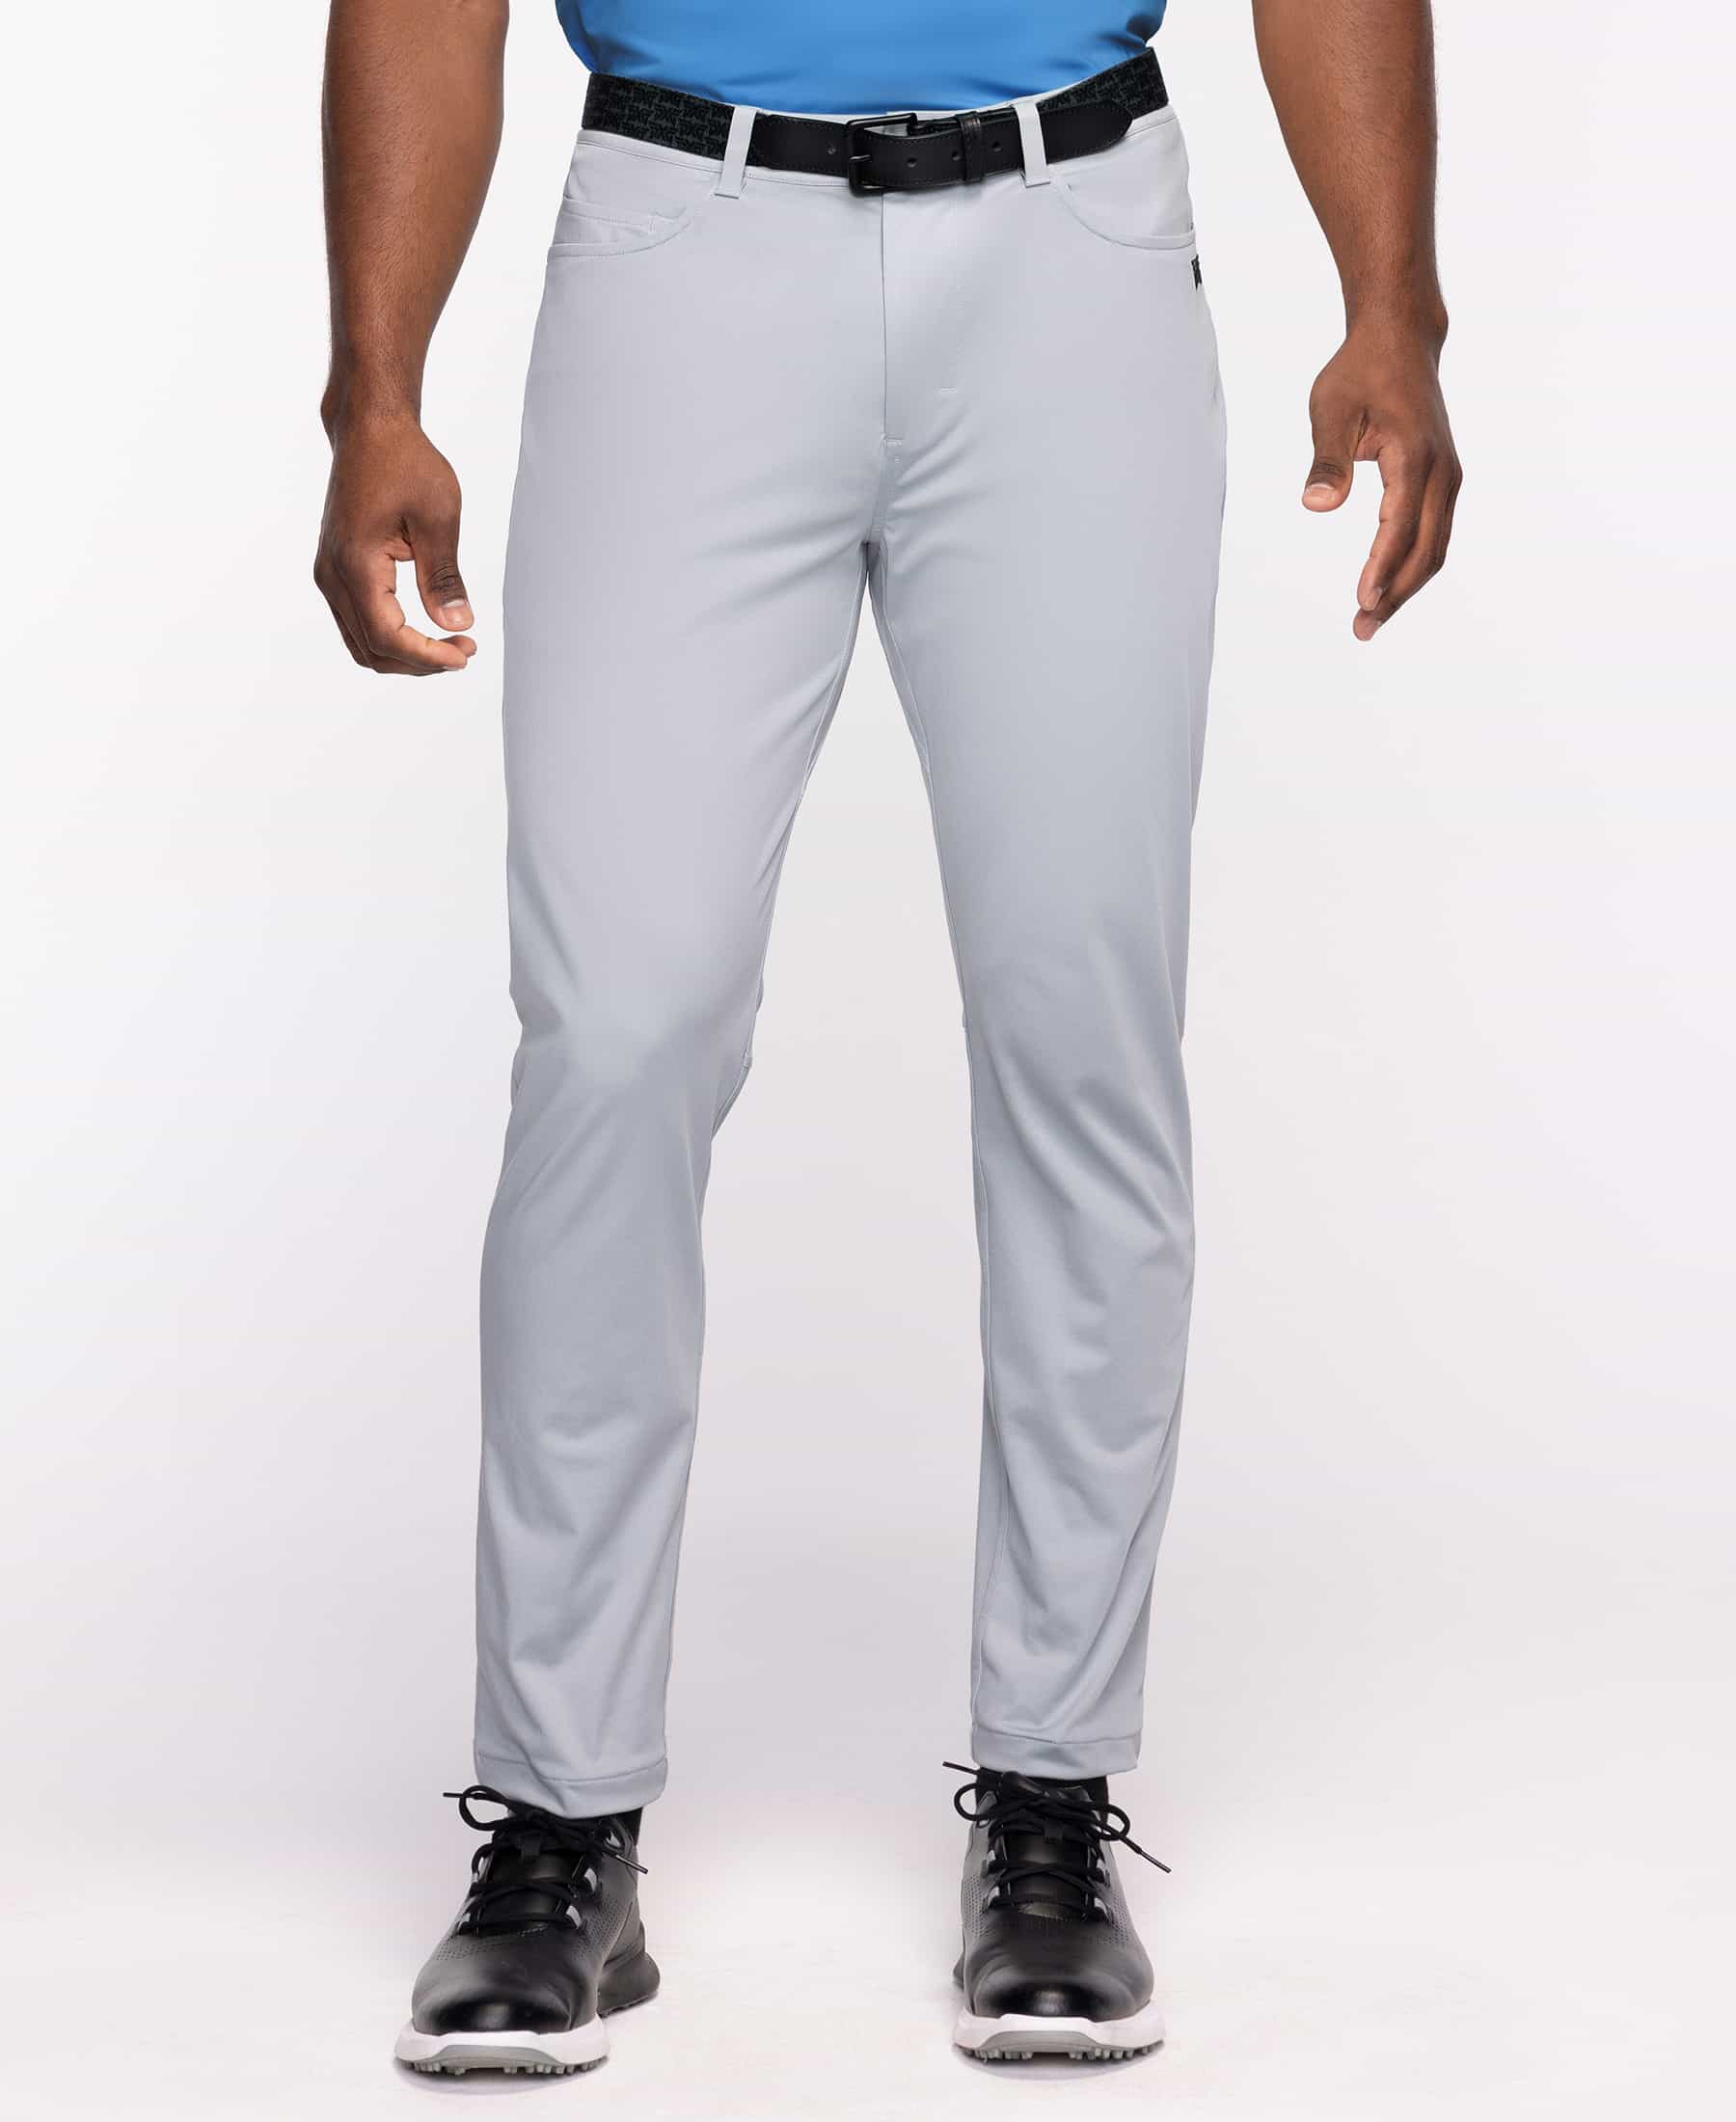 Buy Men's Slim Trouser Pants | PXG